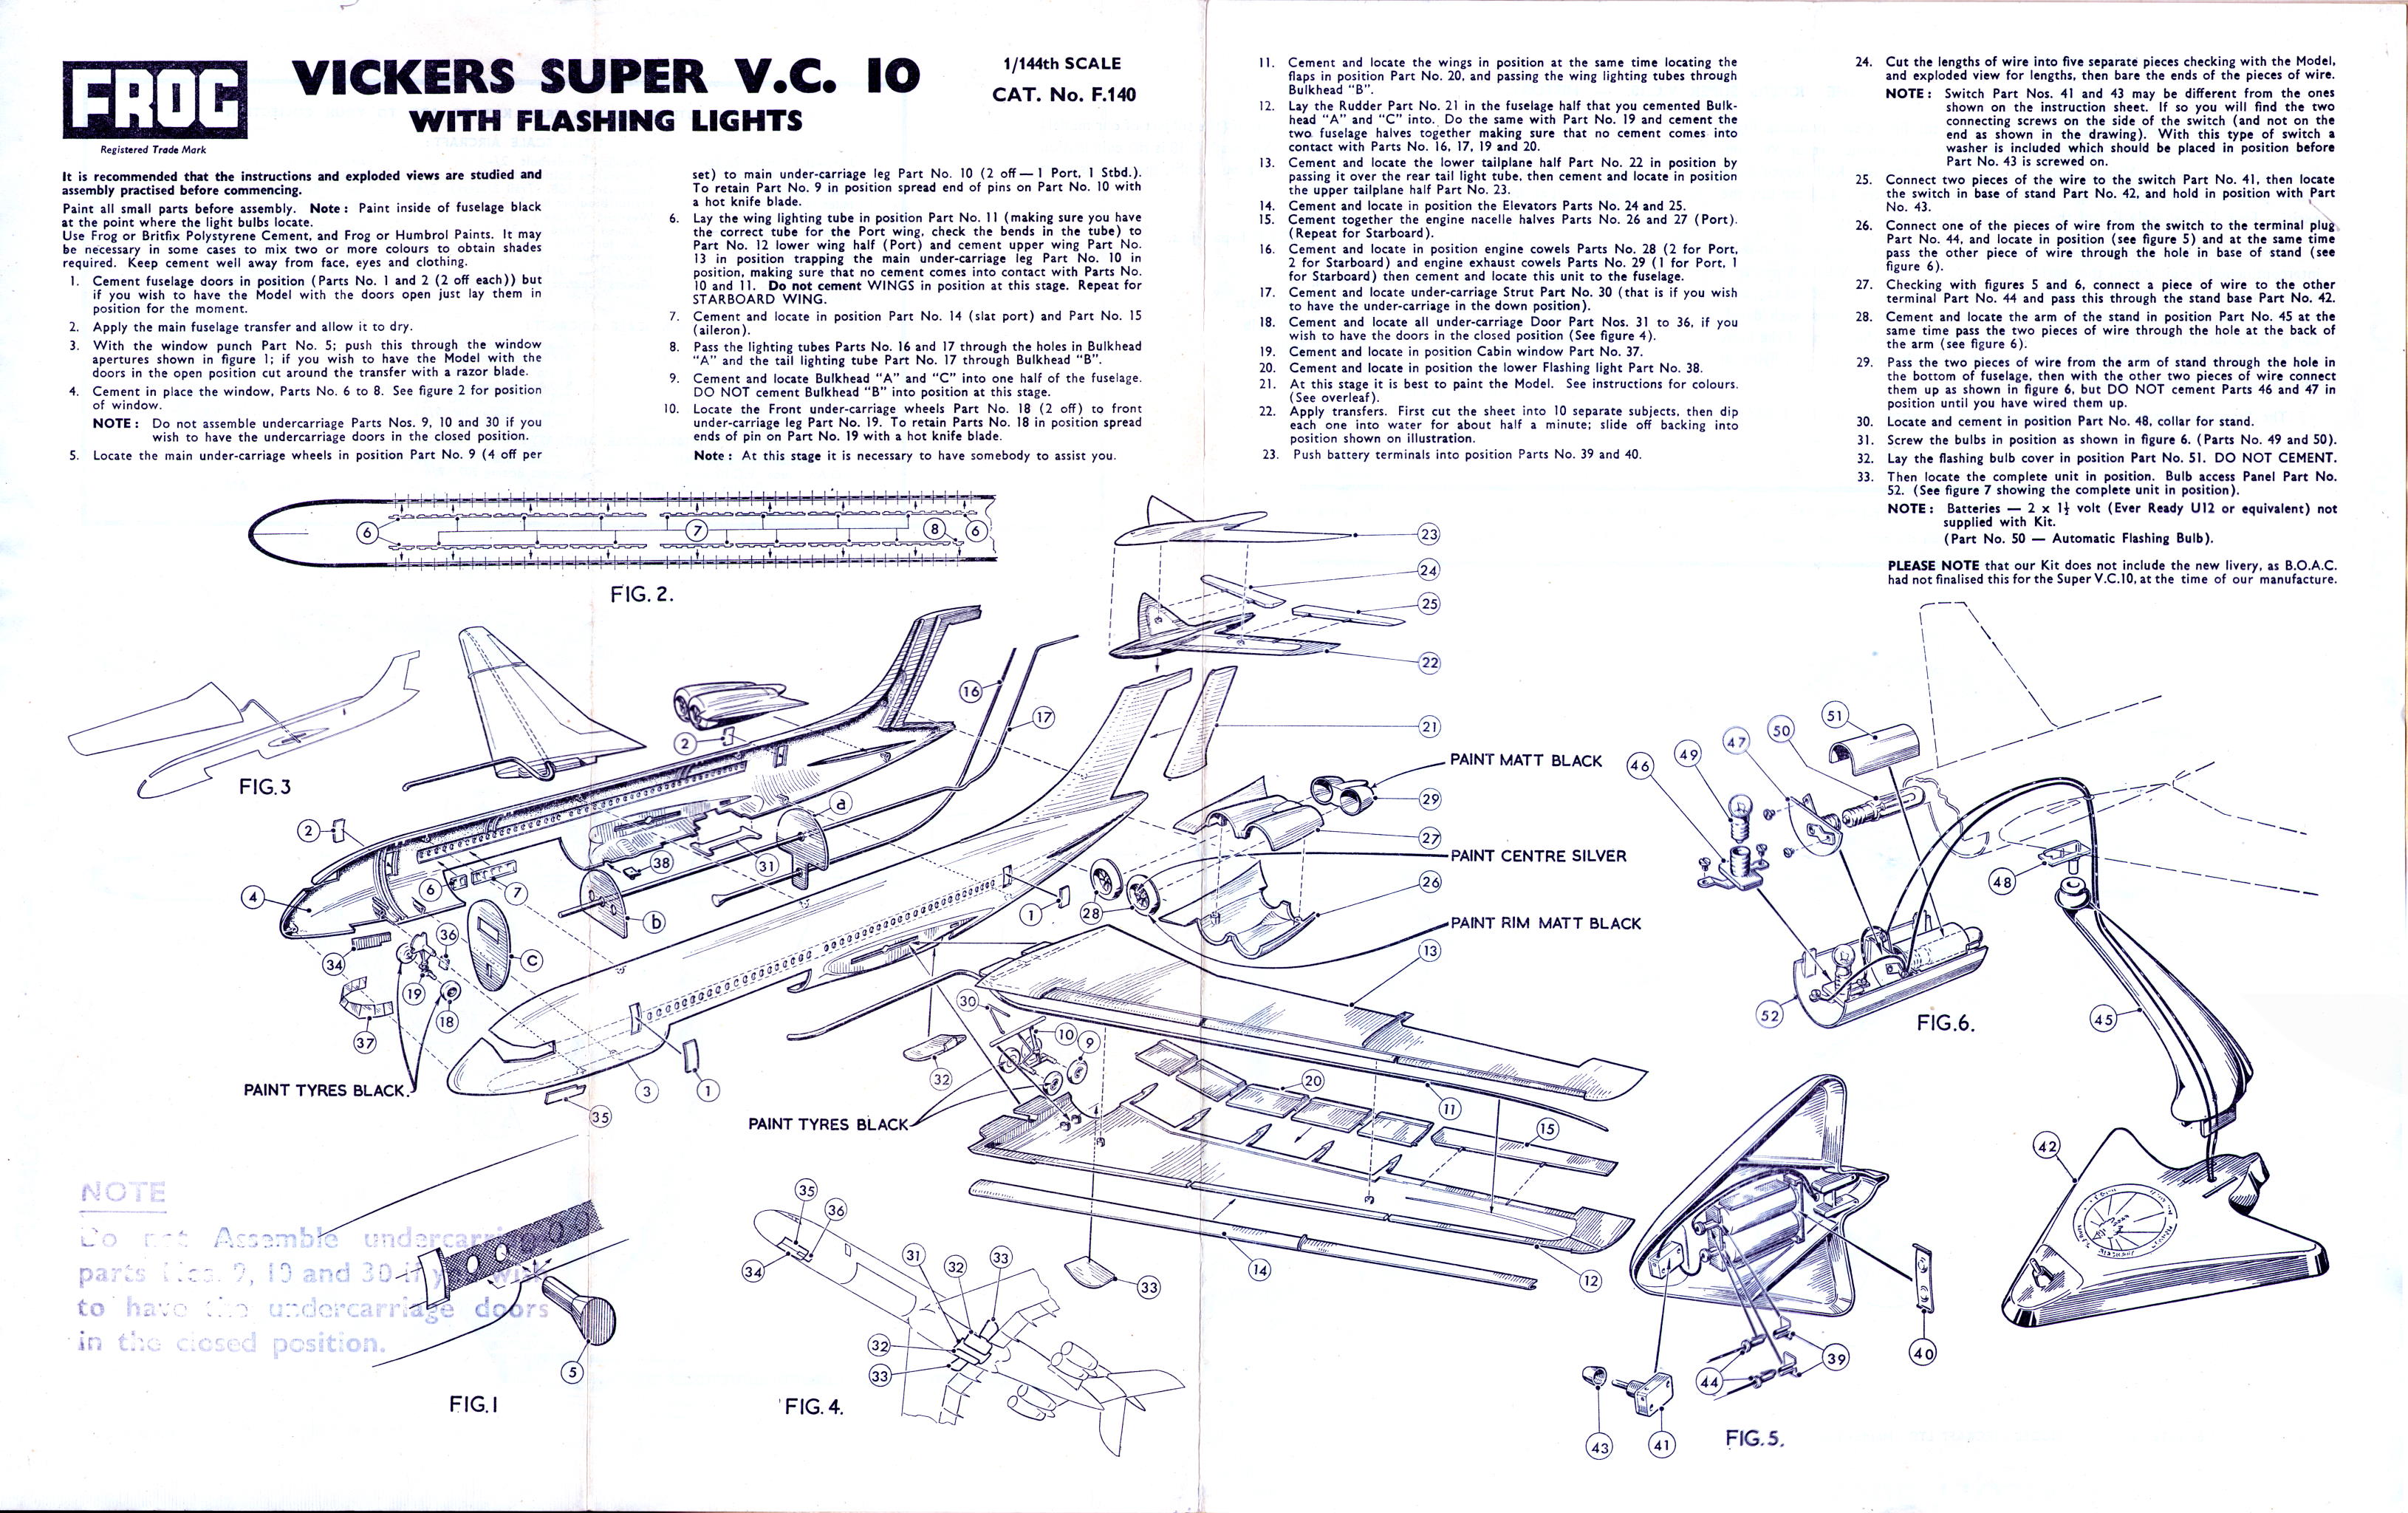 Инструкция по сборке FROG F140 Super VC10 - Jet Airliner, IMA Ltd, 1964